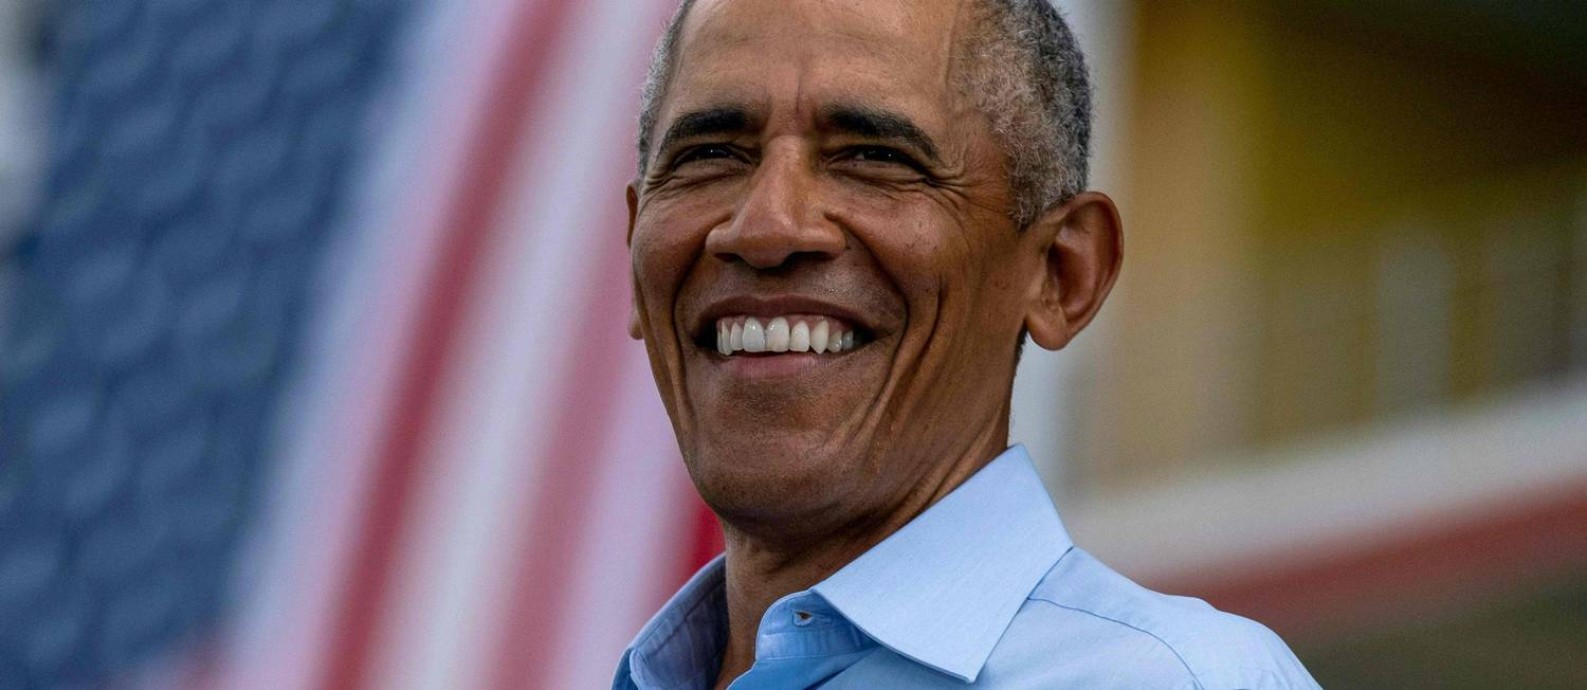 Na reta final, Obama tira as luvas e assume protagonismo na campanha de Joe  Biden - Jornal O Globo